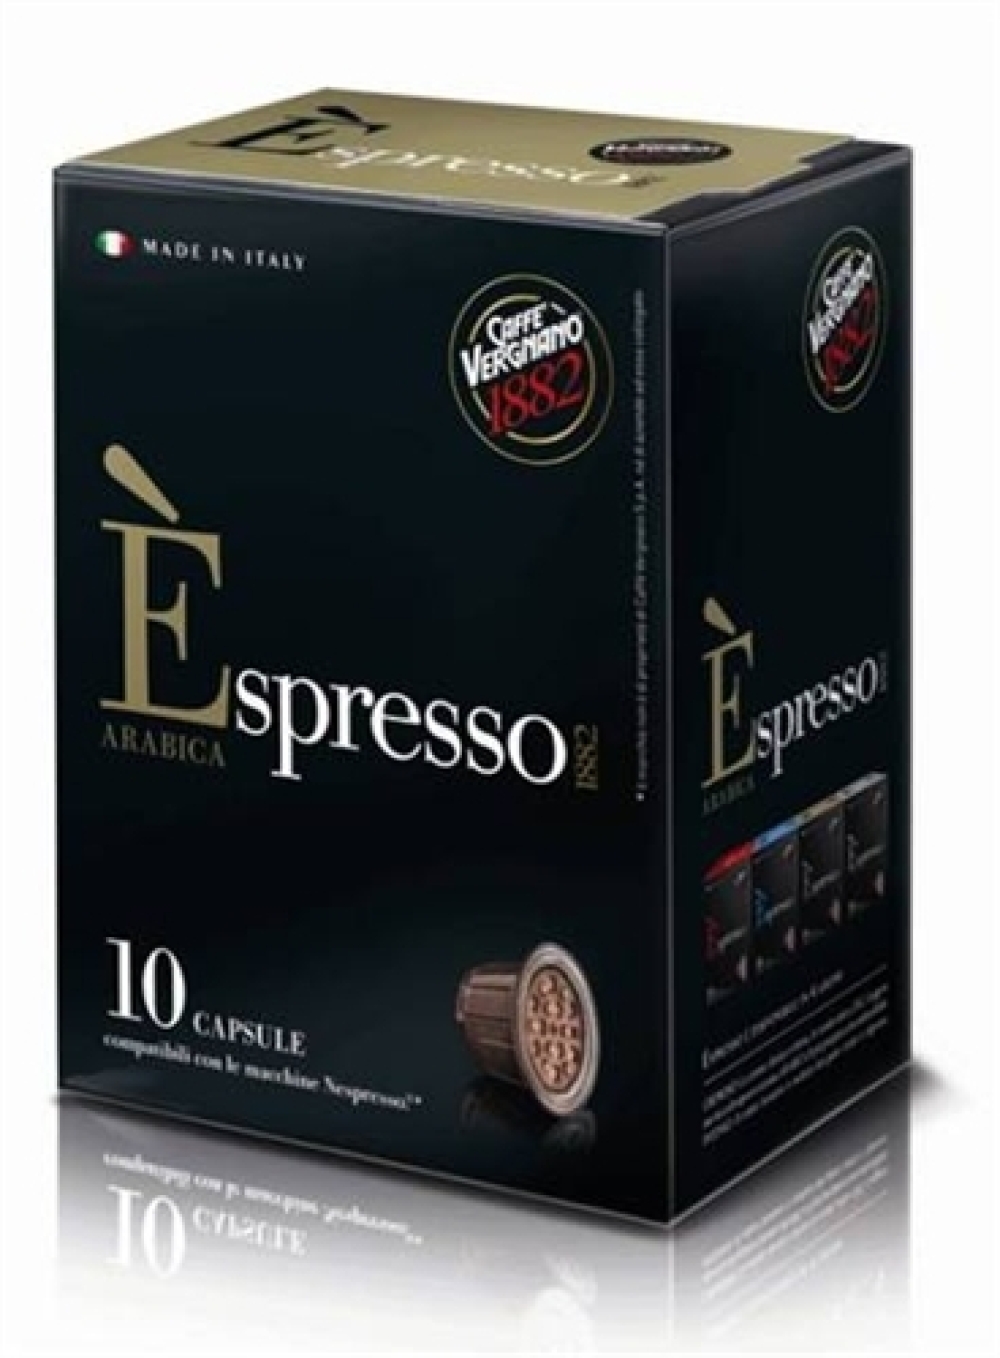 Espresso kapsler Arabica 10 stk, 8001800005471, 764583006278, Kaffe, kapsler, Casa del Caffe Vergnano Spa, 10 Caps Espr Arabica, 627